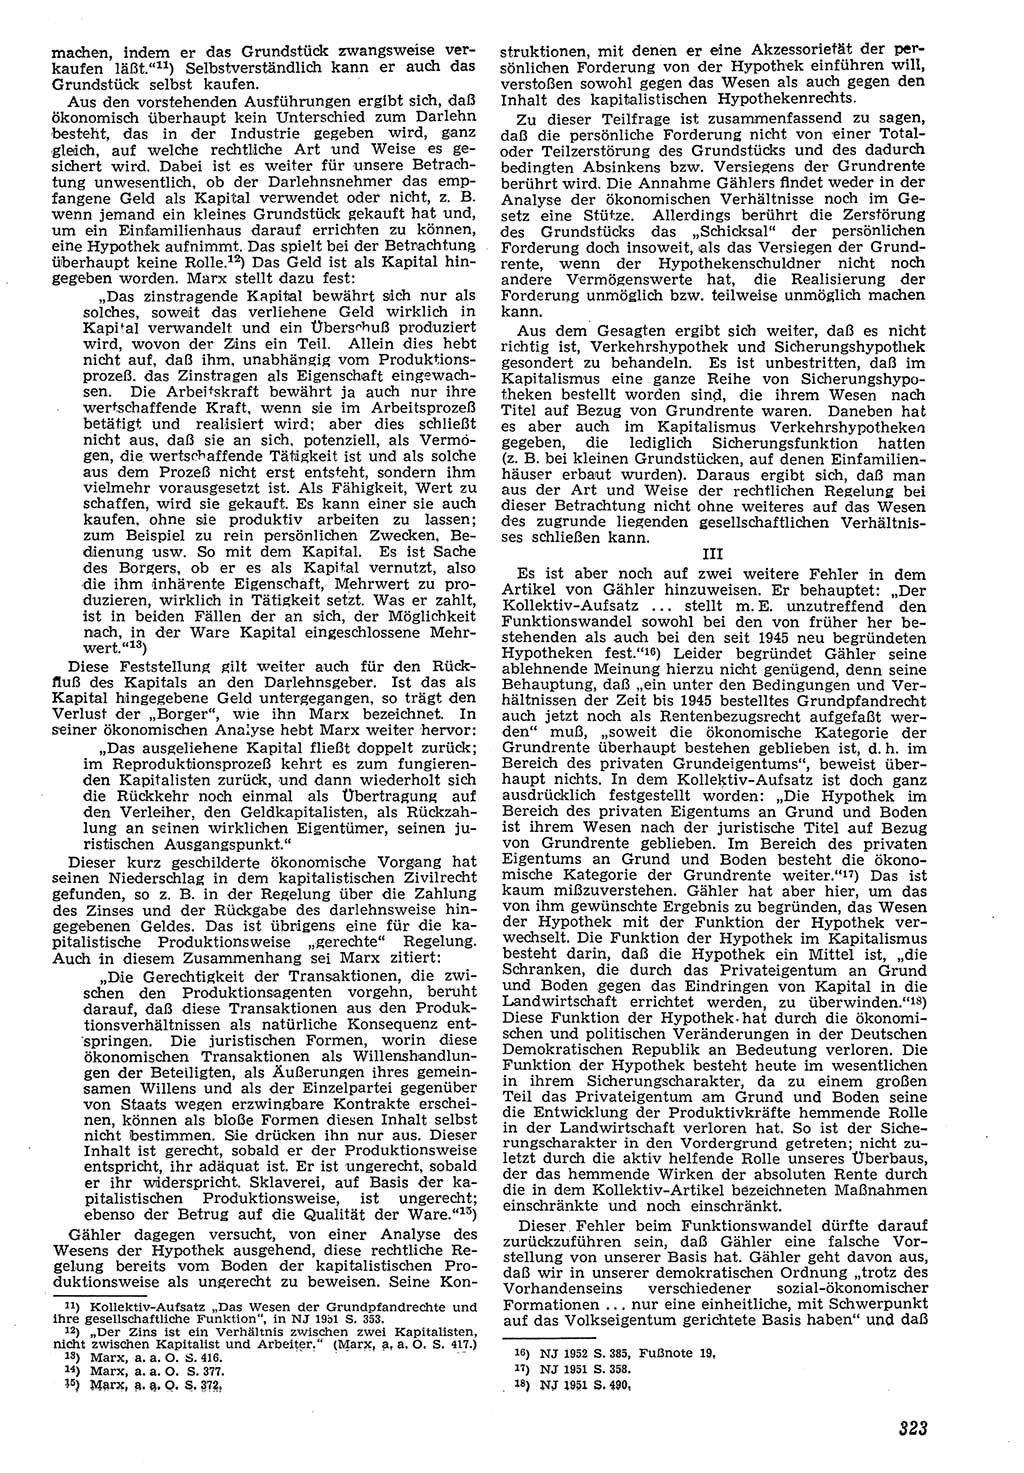 Neue Justiz (NJ), Zeitschrift für Recht und Rechtswissenschaft [Deutsche Demokratische Republik (DDR)], 7. Jahrgang 1953, Seite 323 (NJ DDR 1953, S. 323)